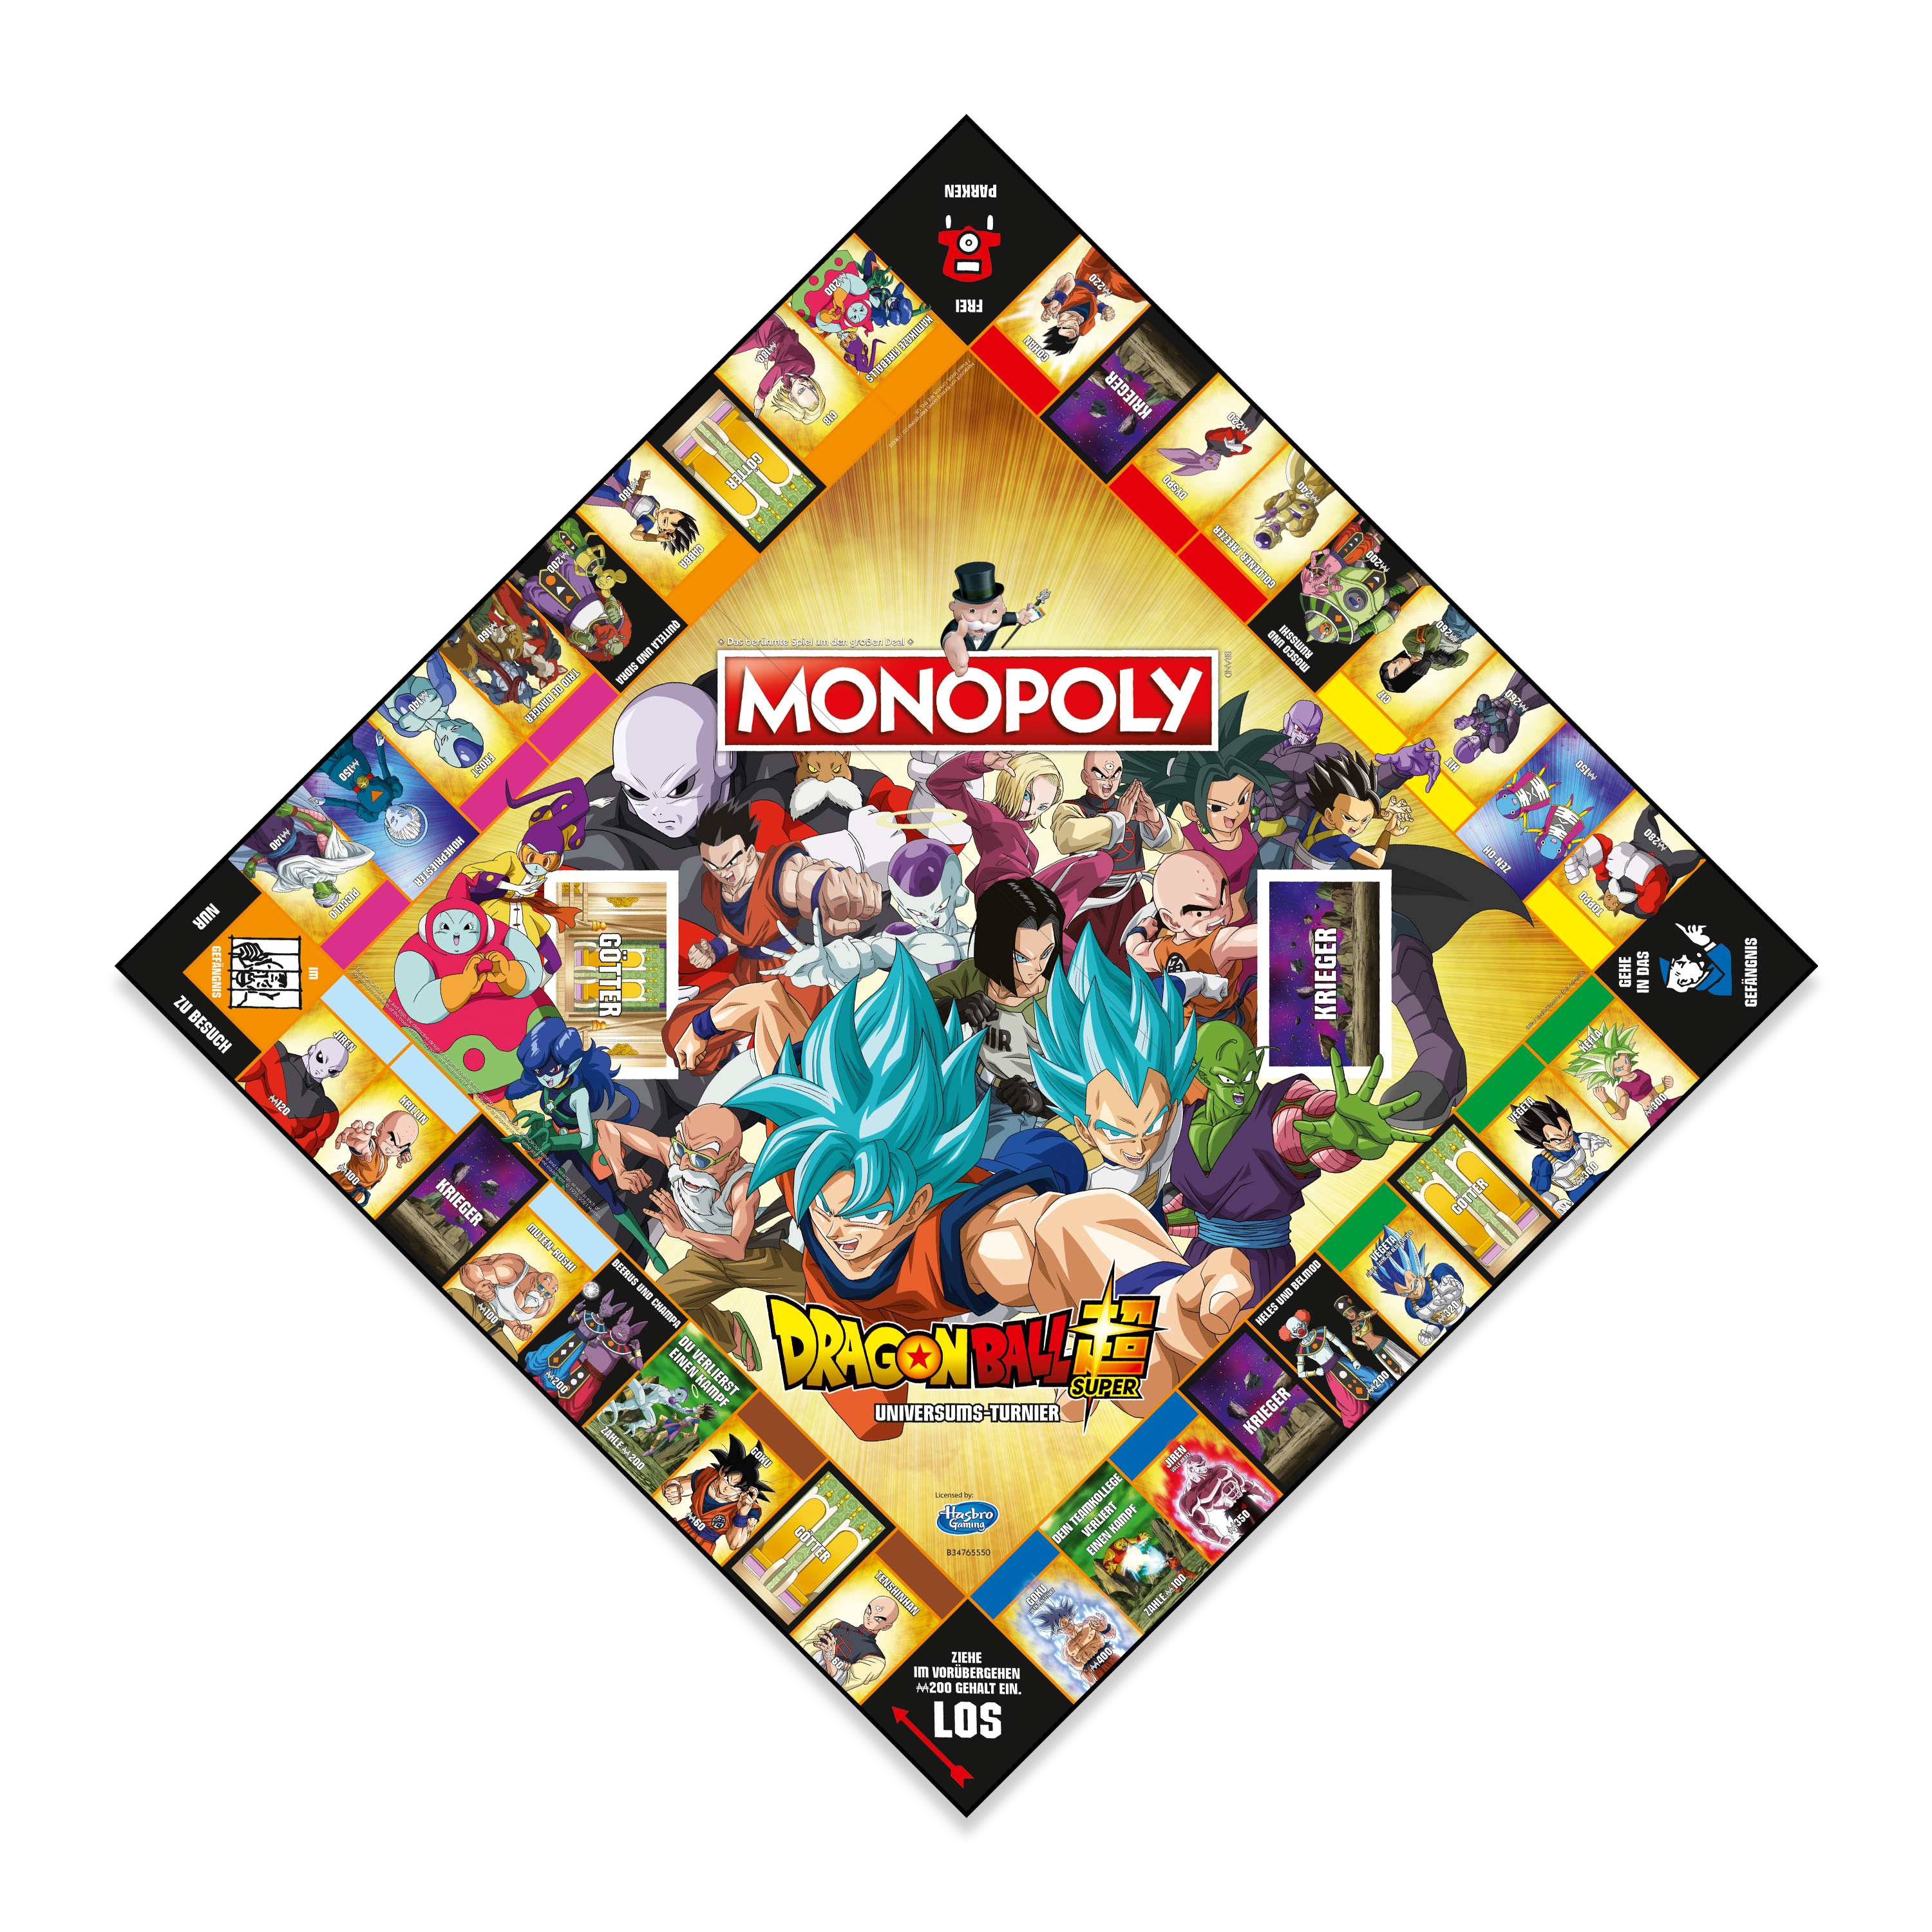 Monopoly Dragon Ball Super (deutsch/französisch)